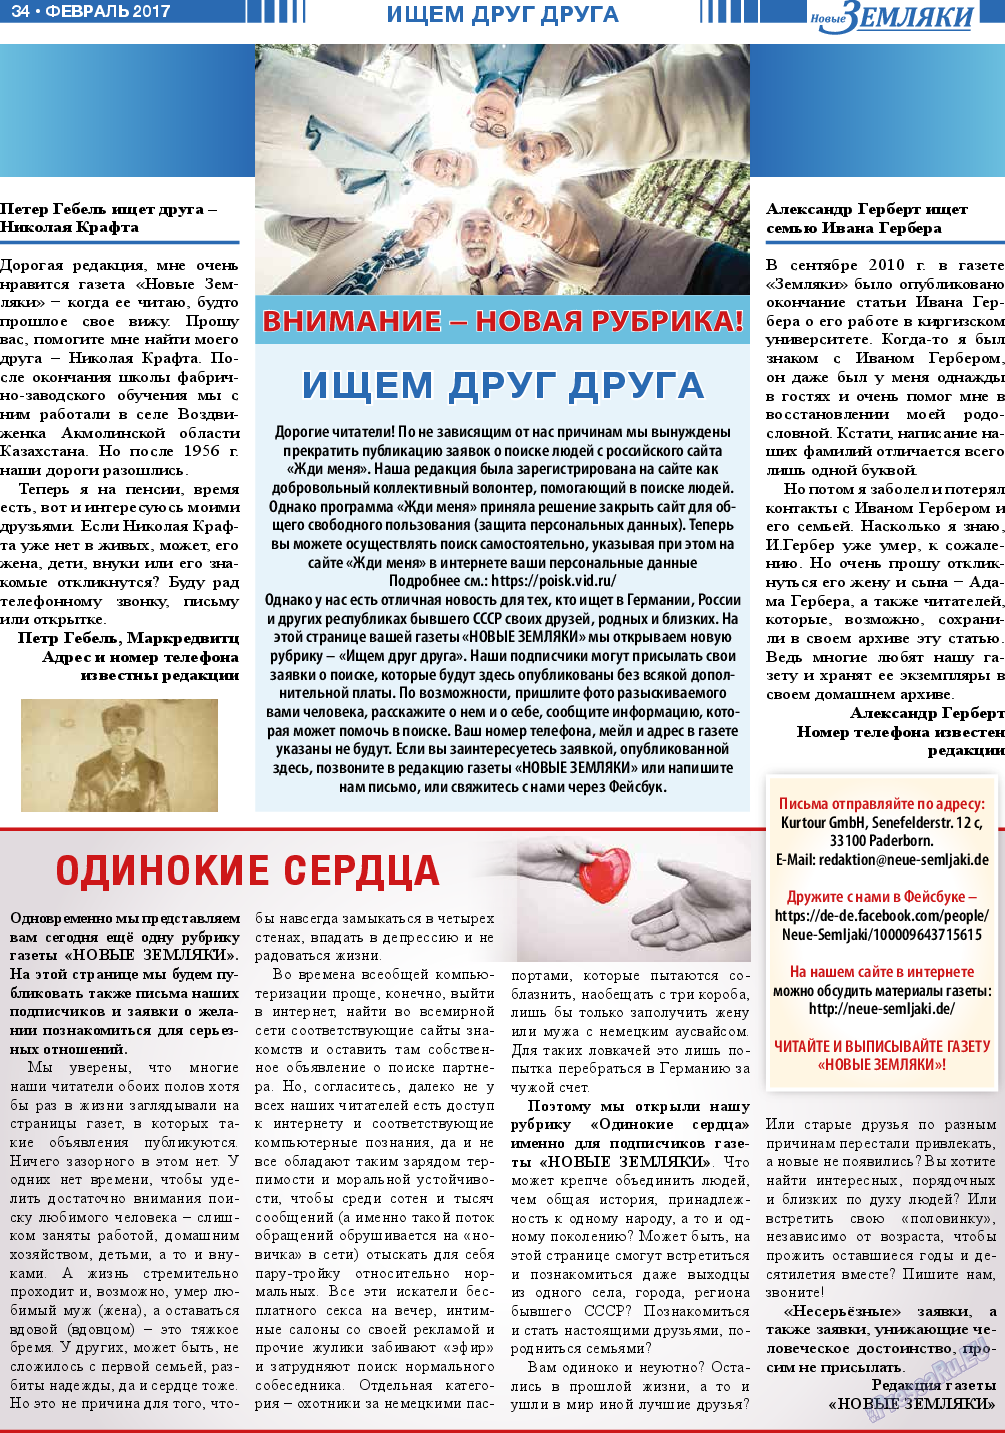 Новые Земляки, газета. 2017 №2 стр.34